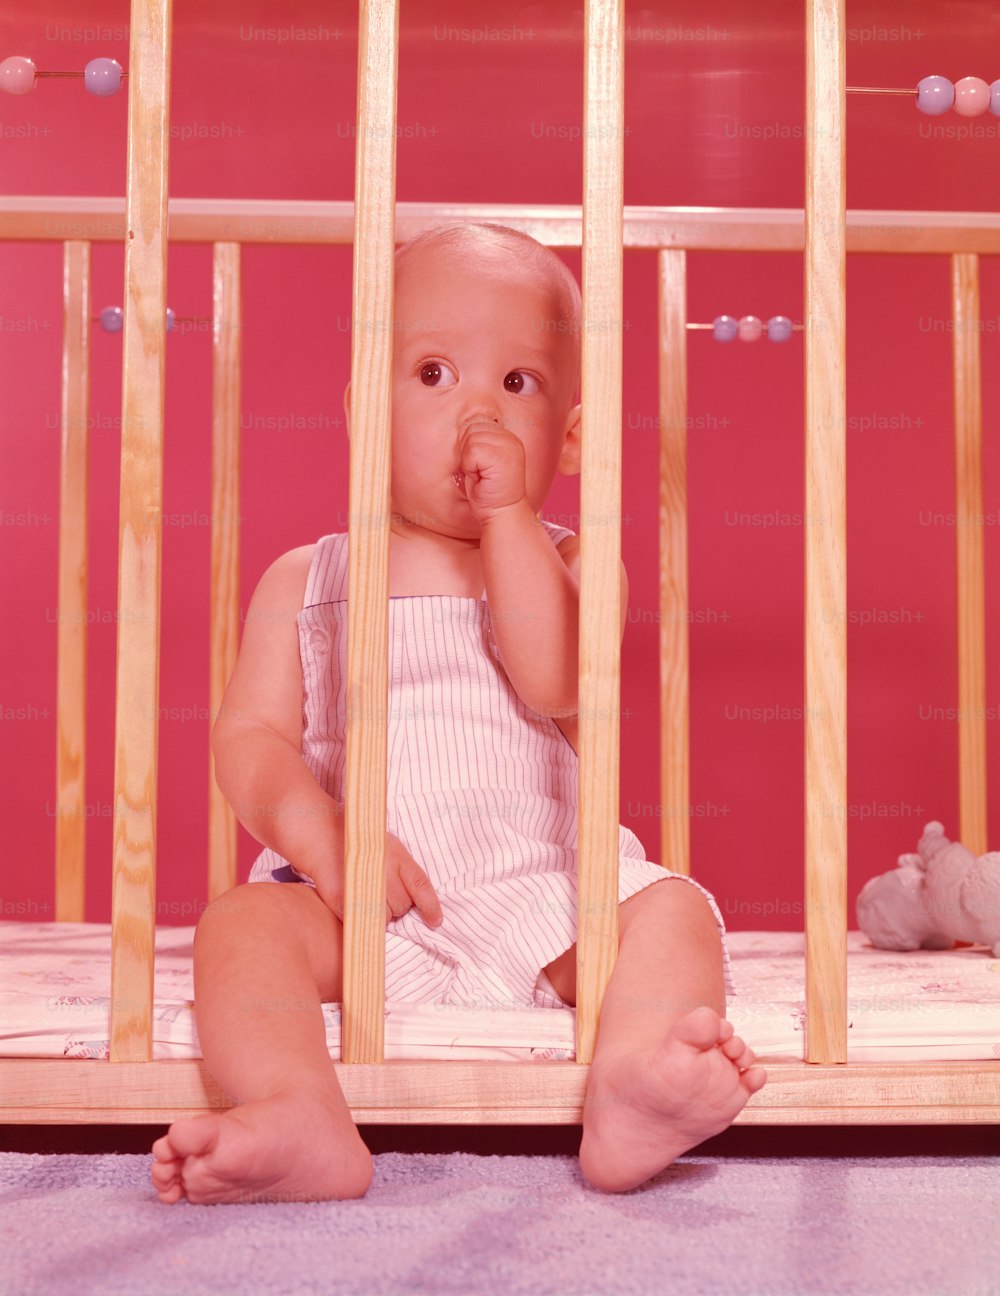 ESTADOS UNIDOS - Alrededor de la década de 1950: Bebé en corralito, chupándose el dedo.